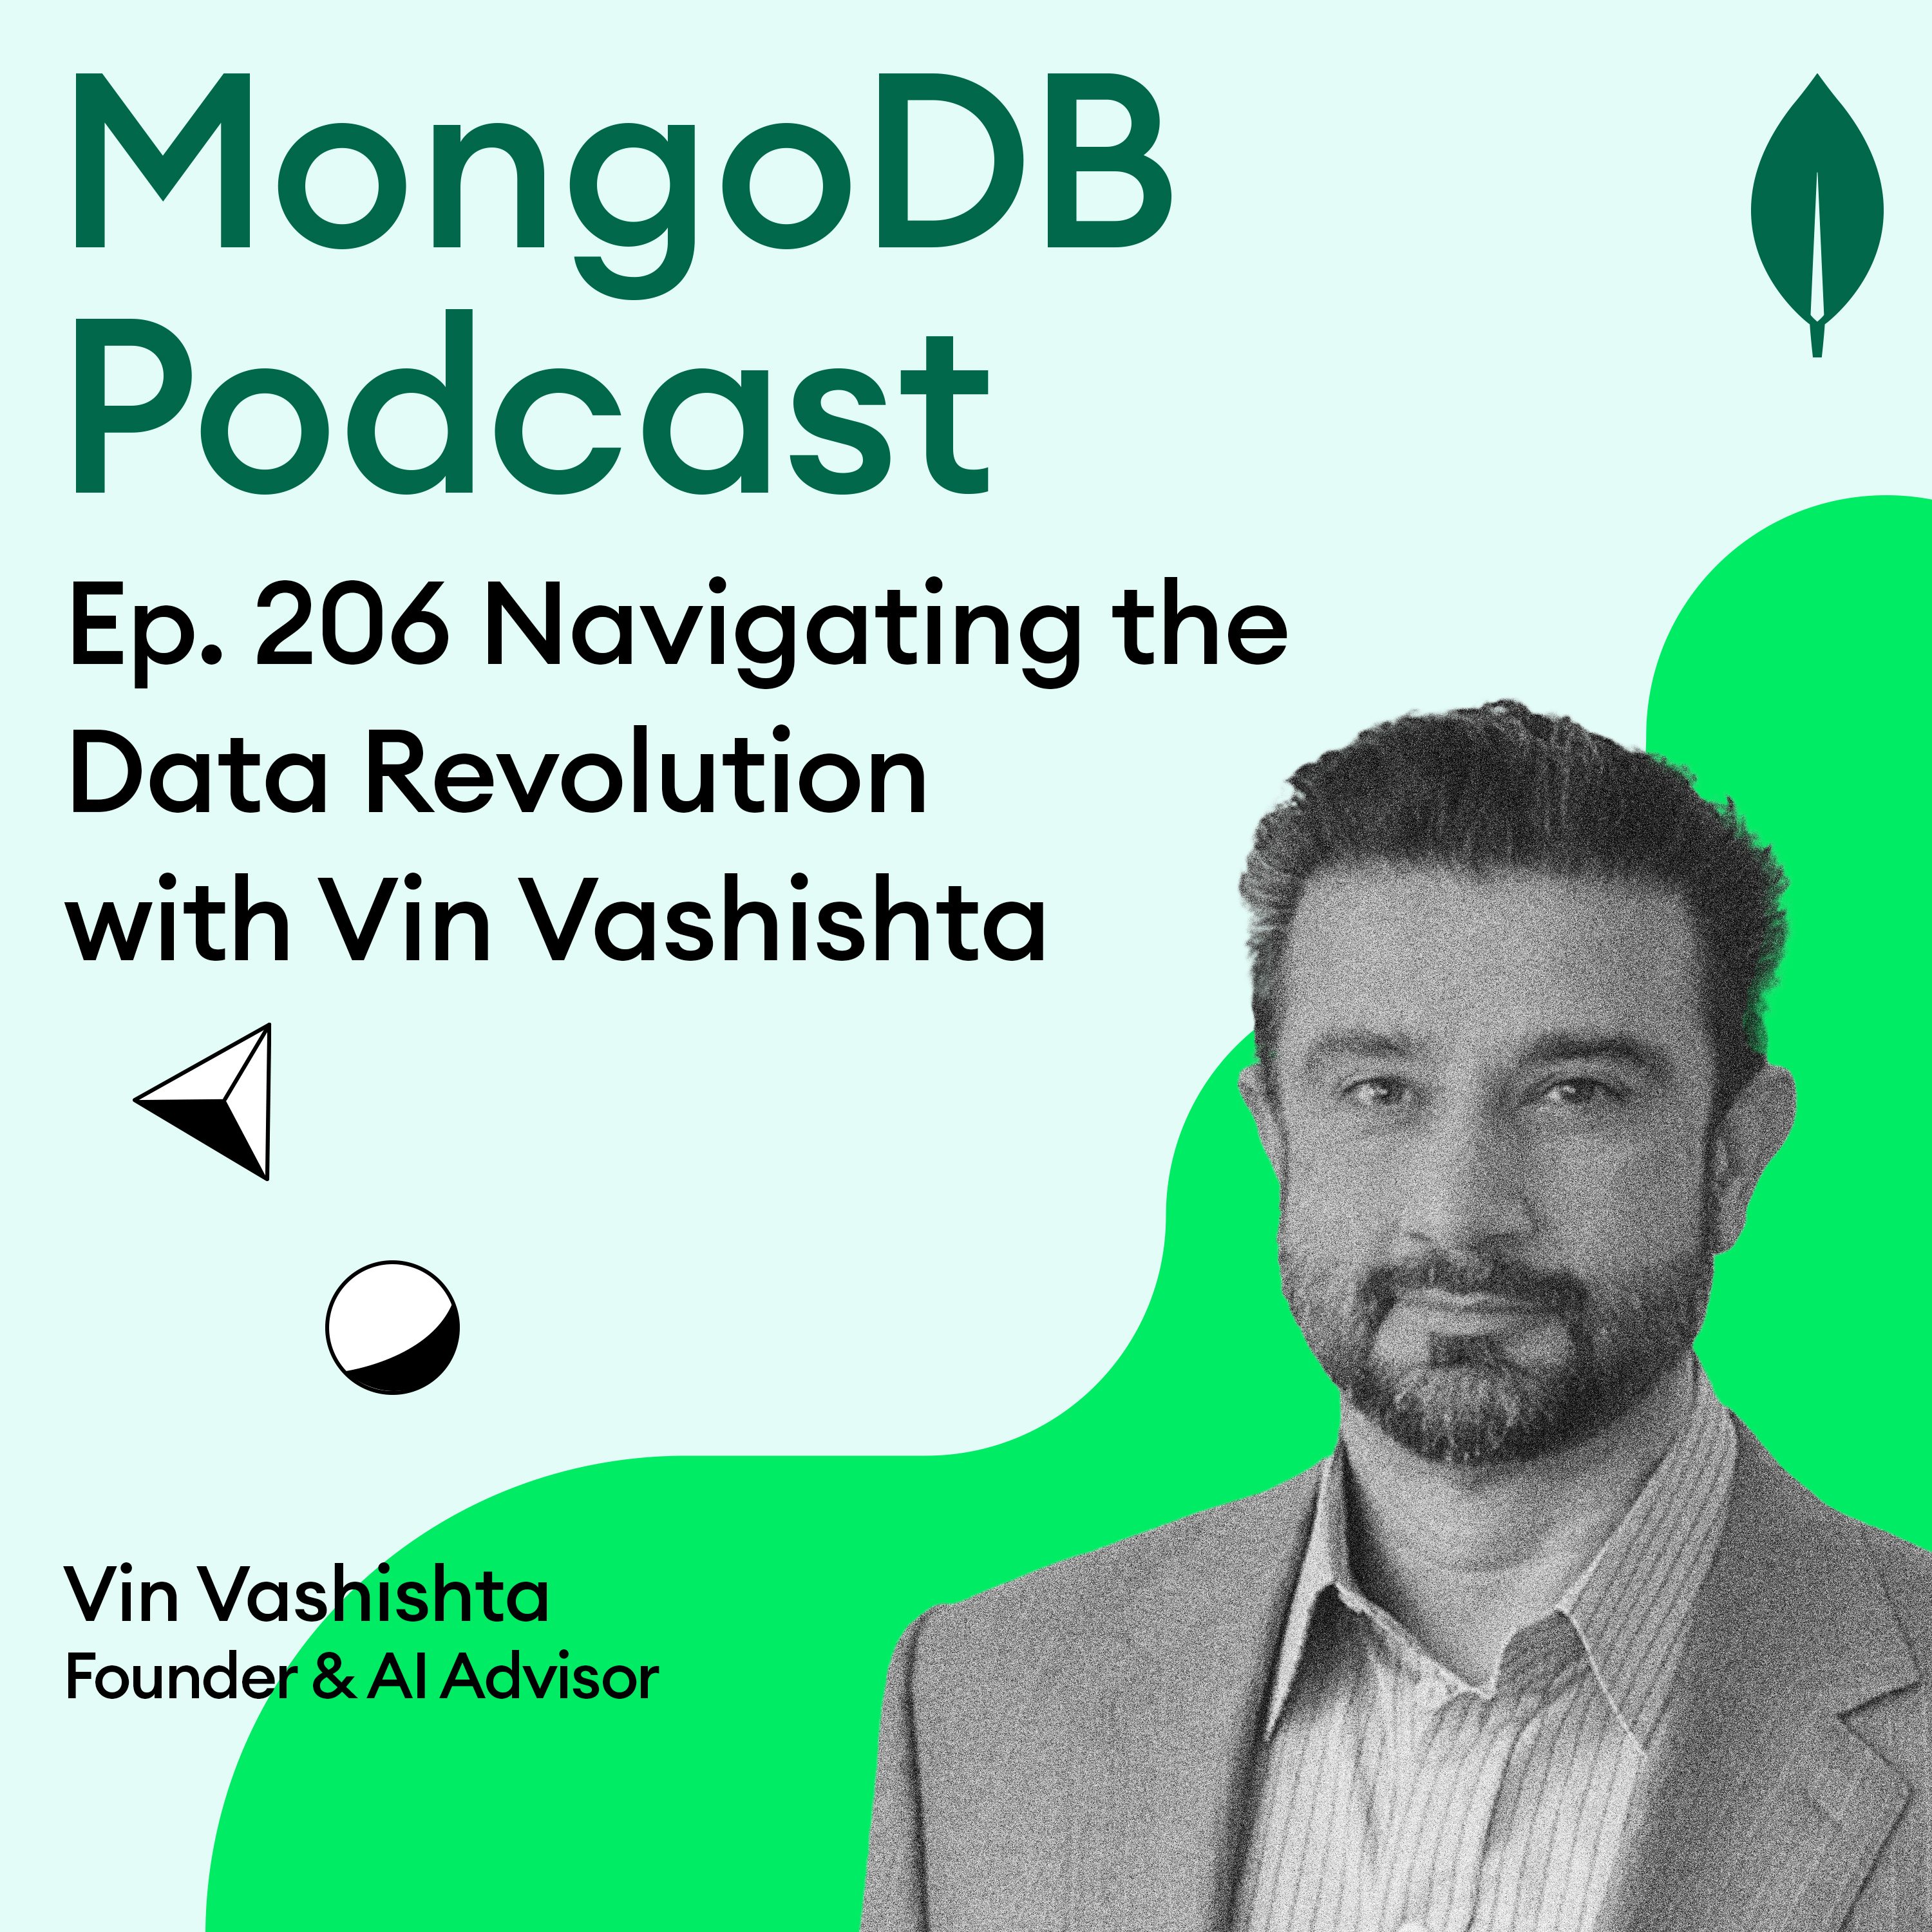 Ep. 206 Navigating the Data Revolution: A Conversation with Vin Vashishta